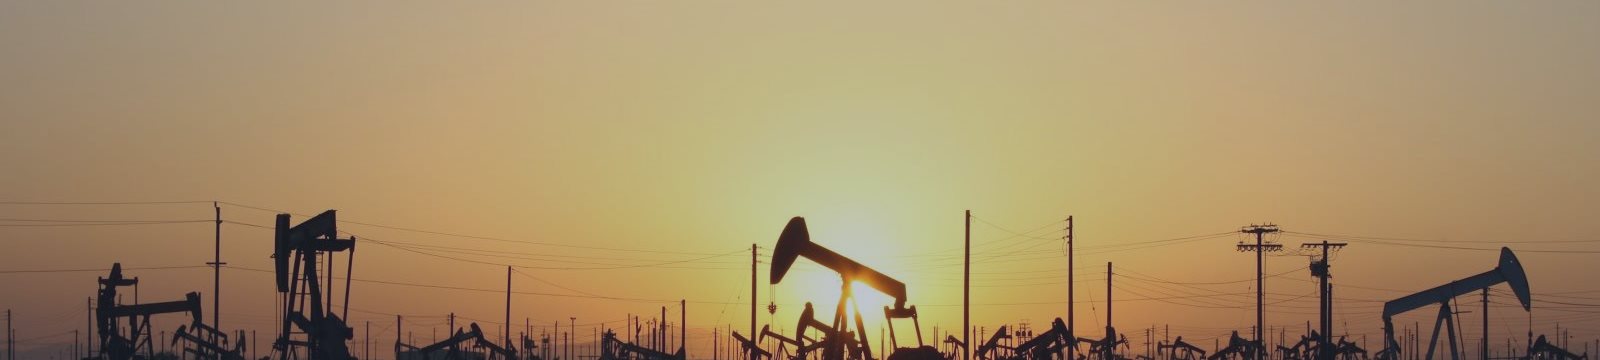 К 2030 году Саудовская Аравия станет импортером нефти?